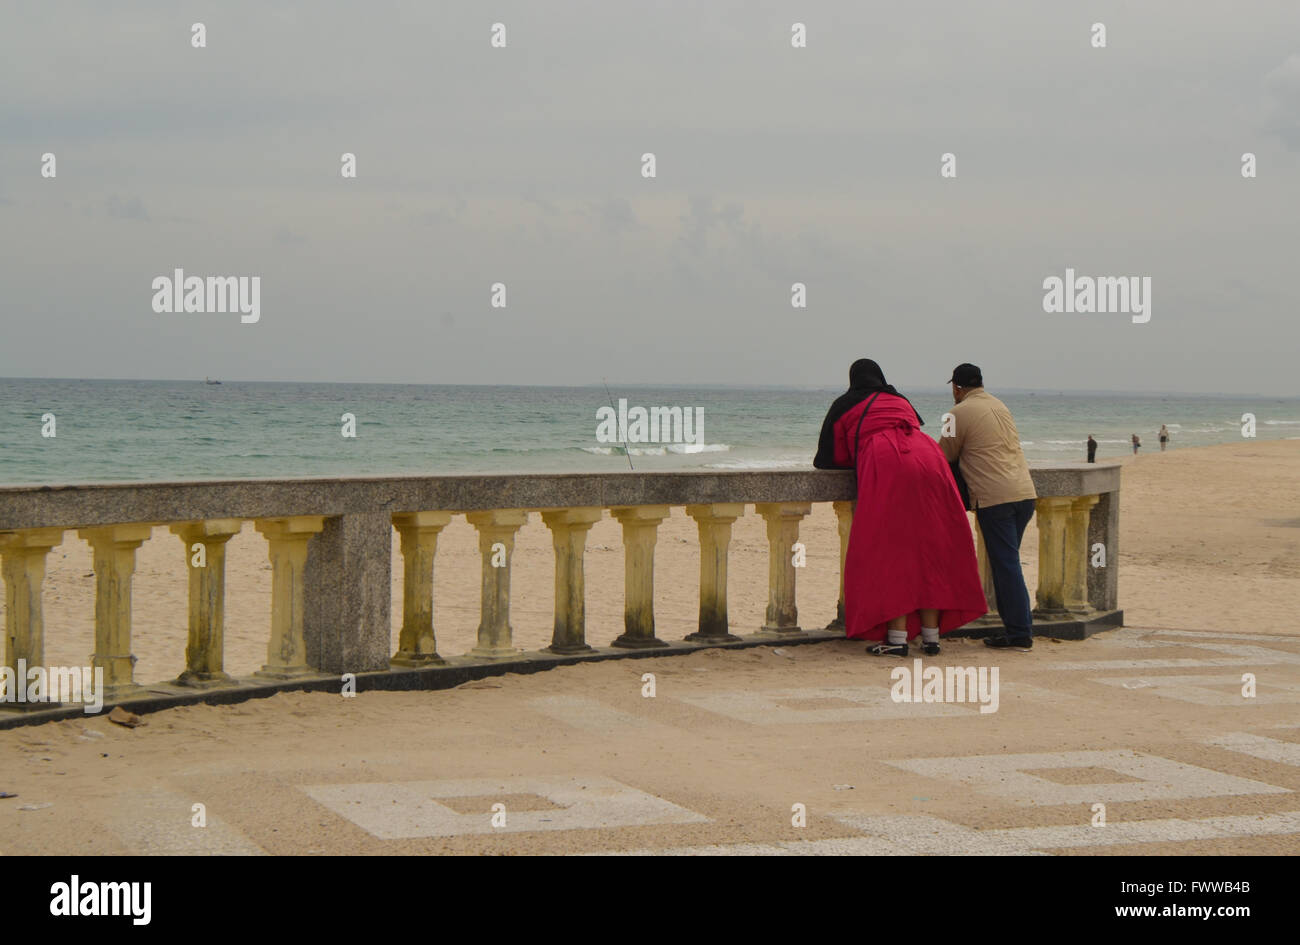 Pareja de musulmanes en la playa . La mujer está vestida de rojo burka. El mar está en calma. Foto de stock